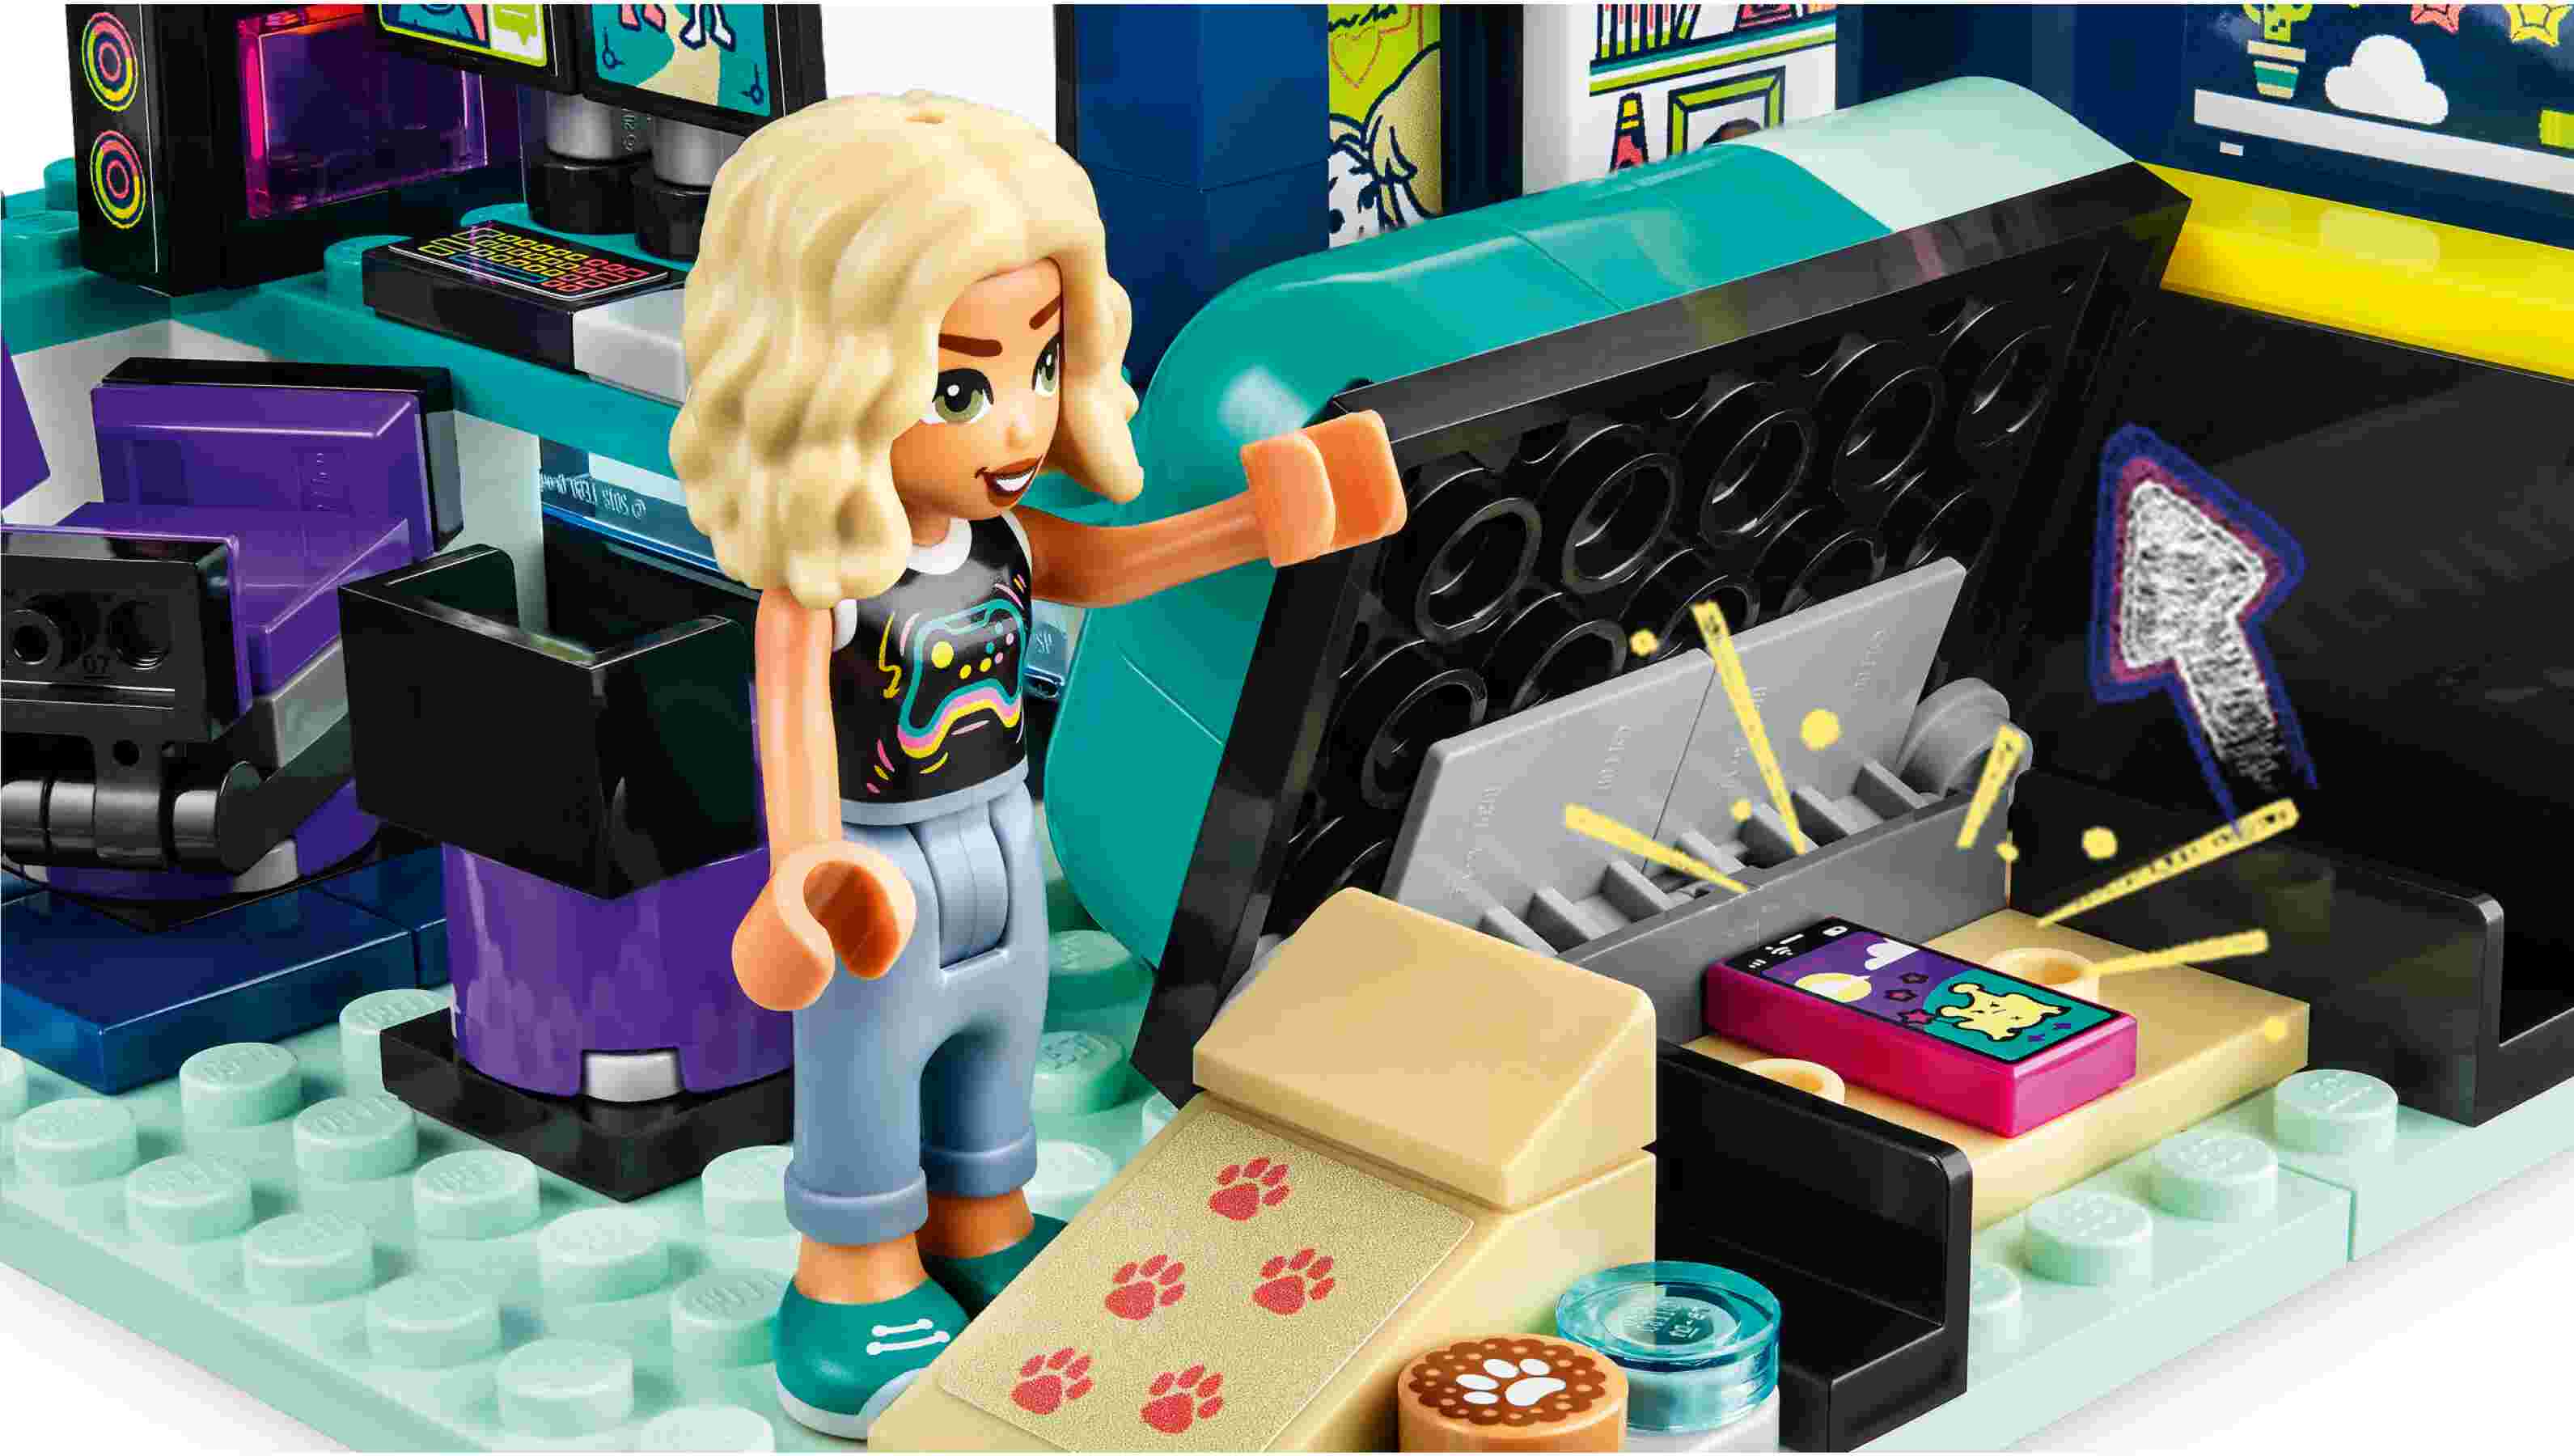 LEGO 41755 Friends Novas Zimmer, Spielfiguren Nova und Zac, Rettungshund Pickle